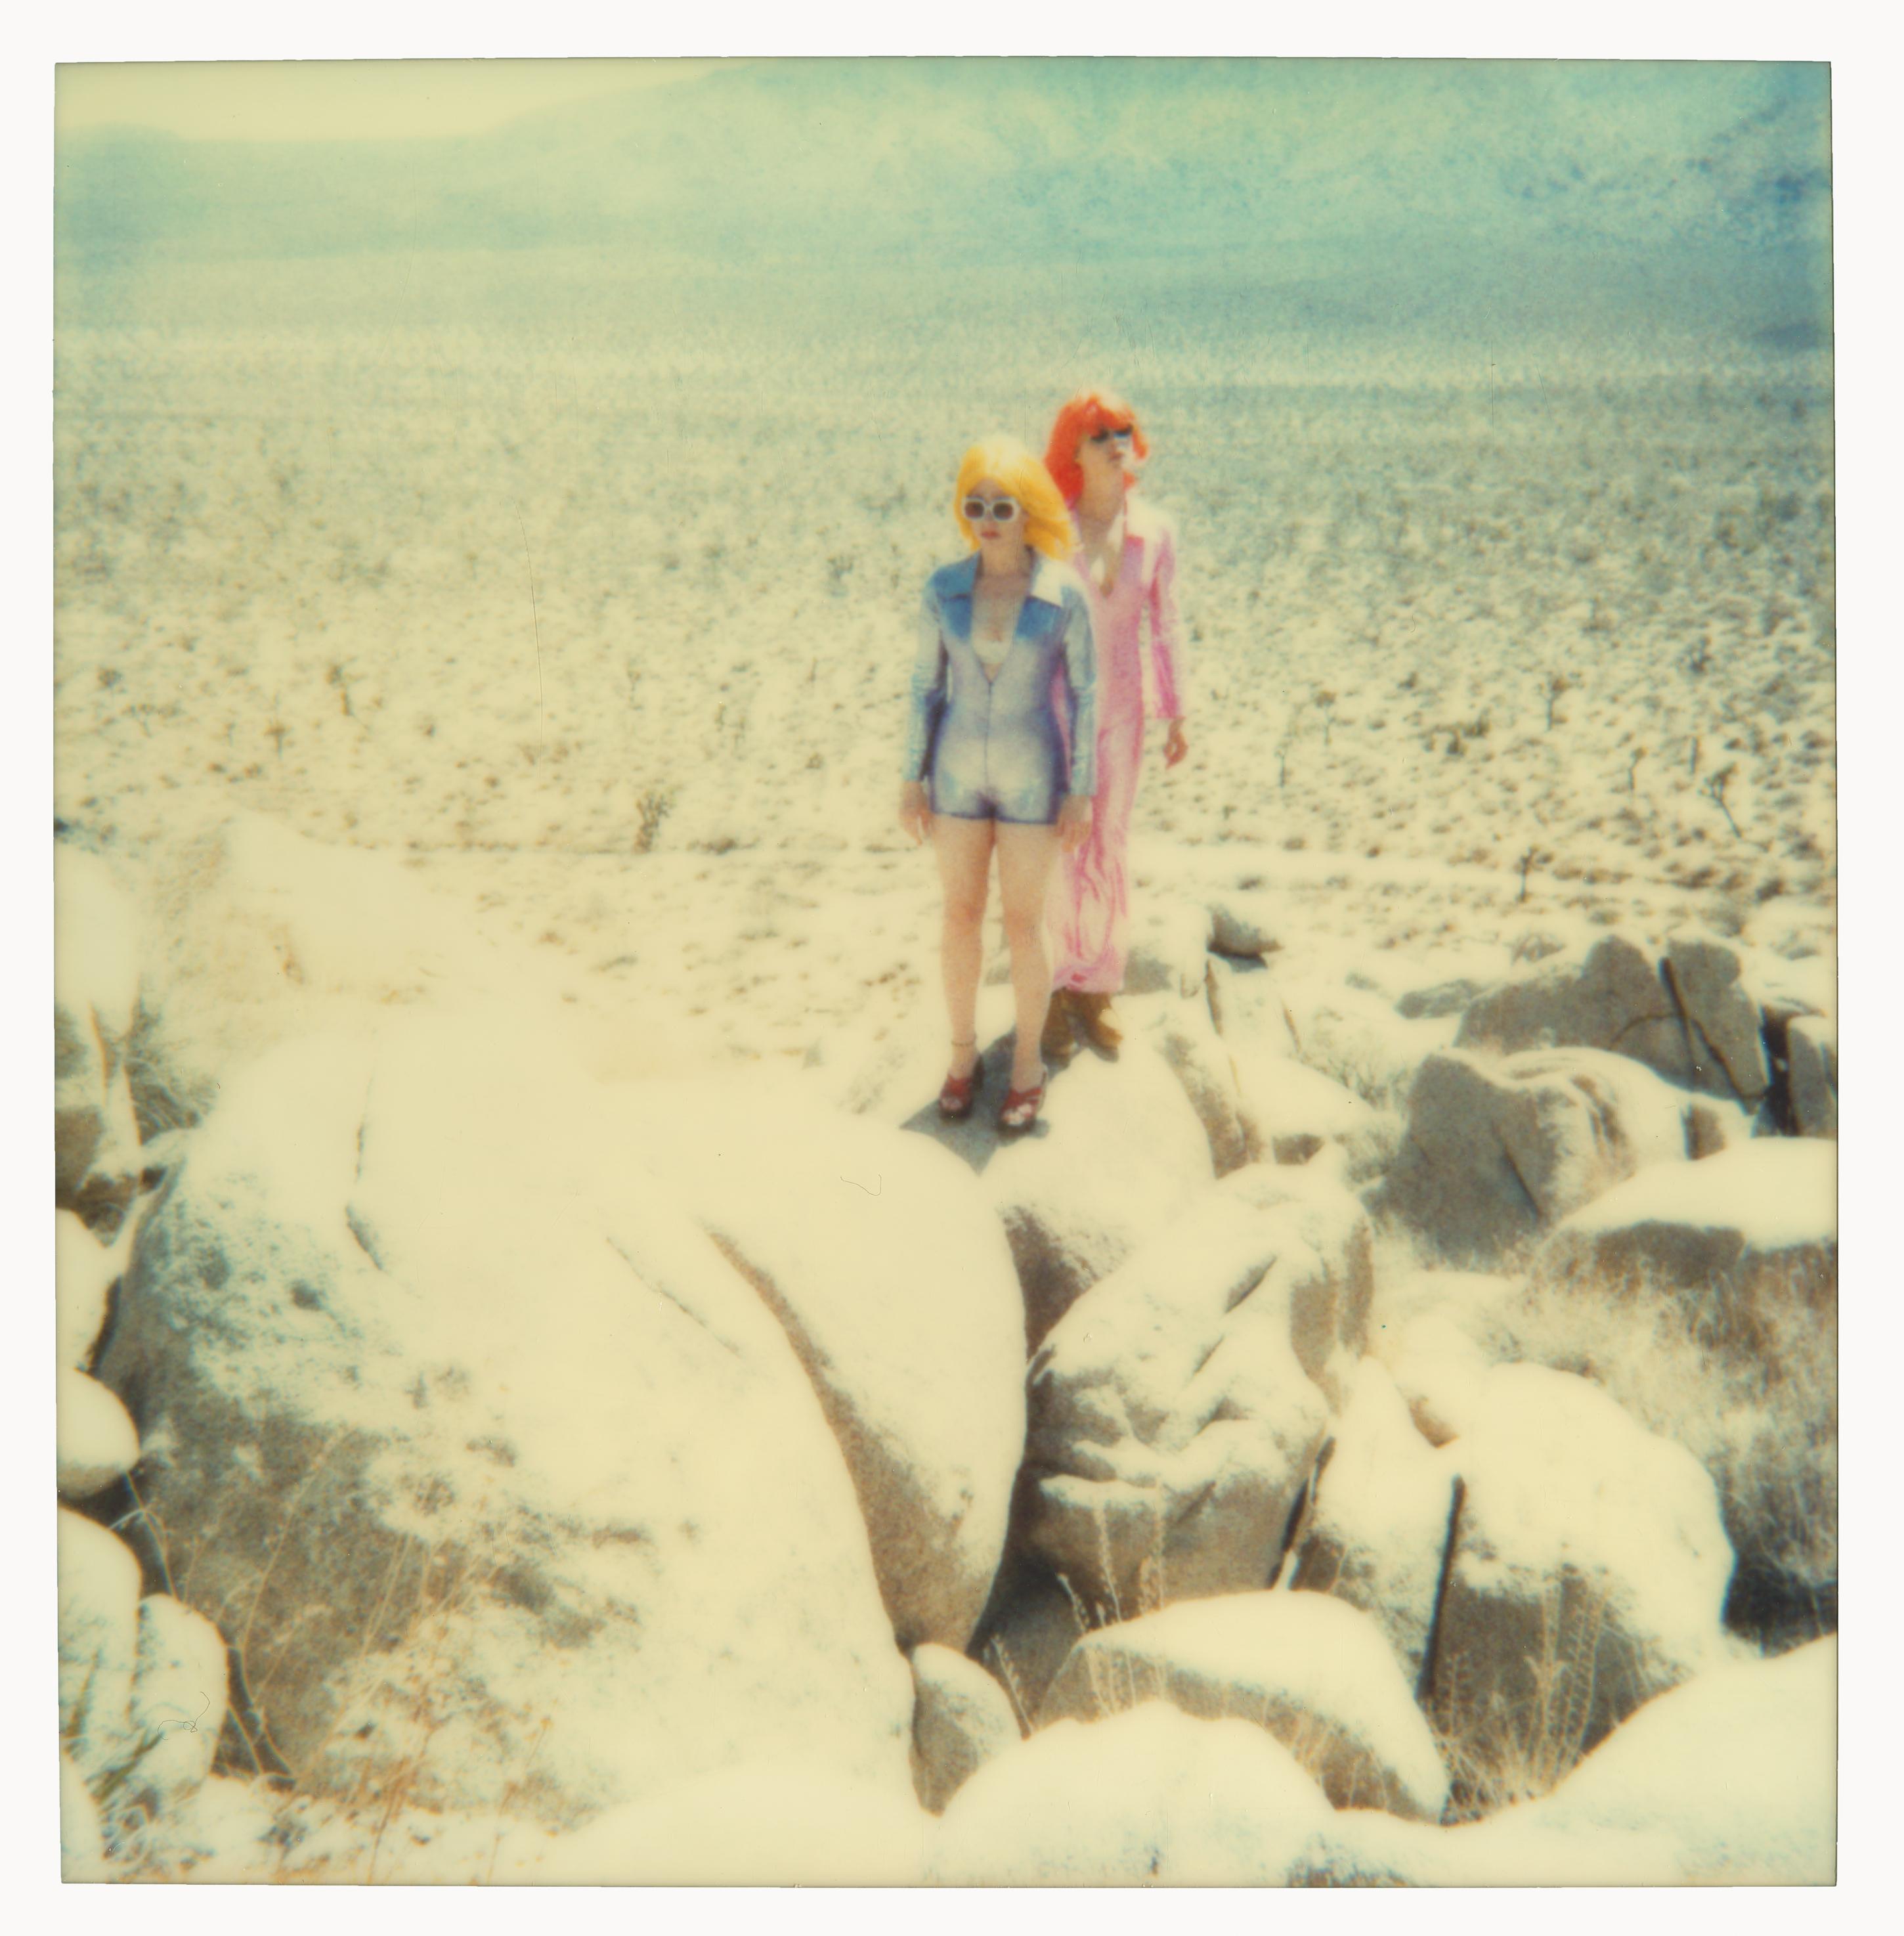 Stefanie Schneider Landscape Photograph - On the Rocks - Contemporary, Figurative, Woman, Polaroid, Photograph, Landscape